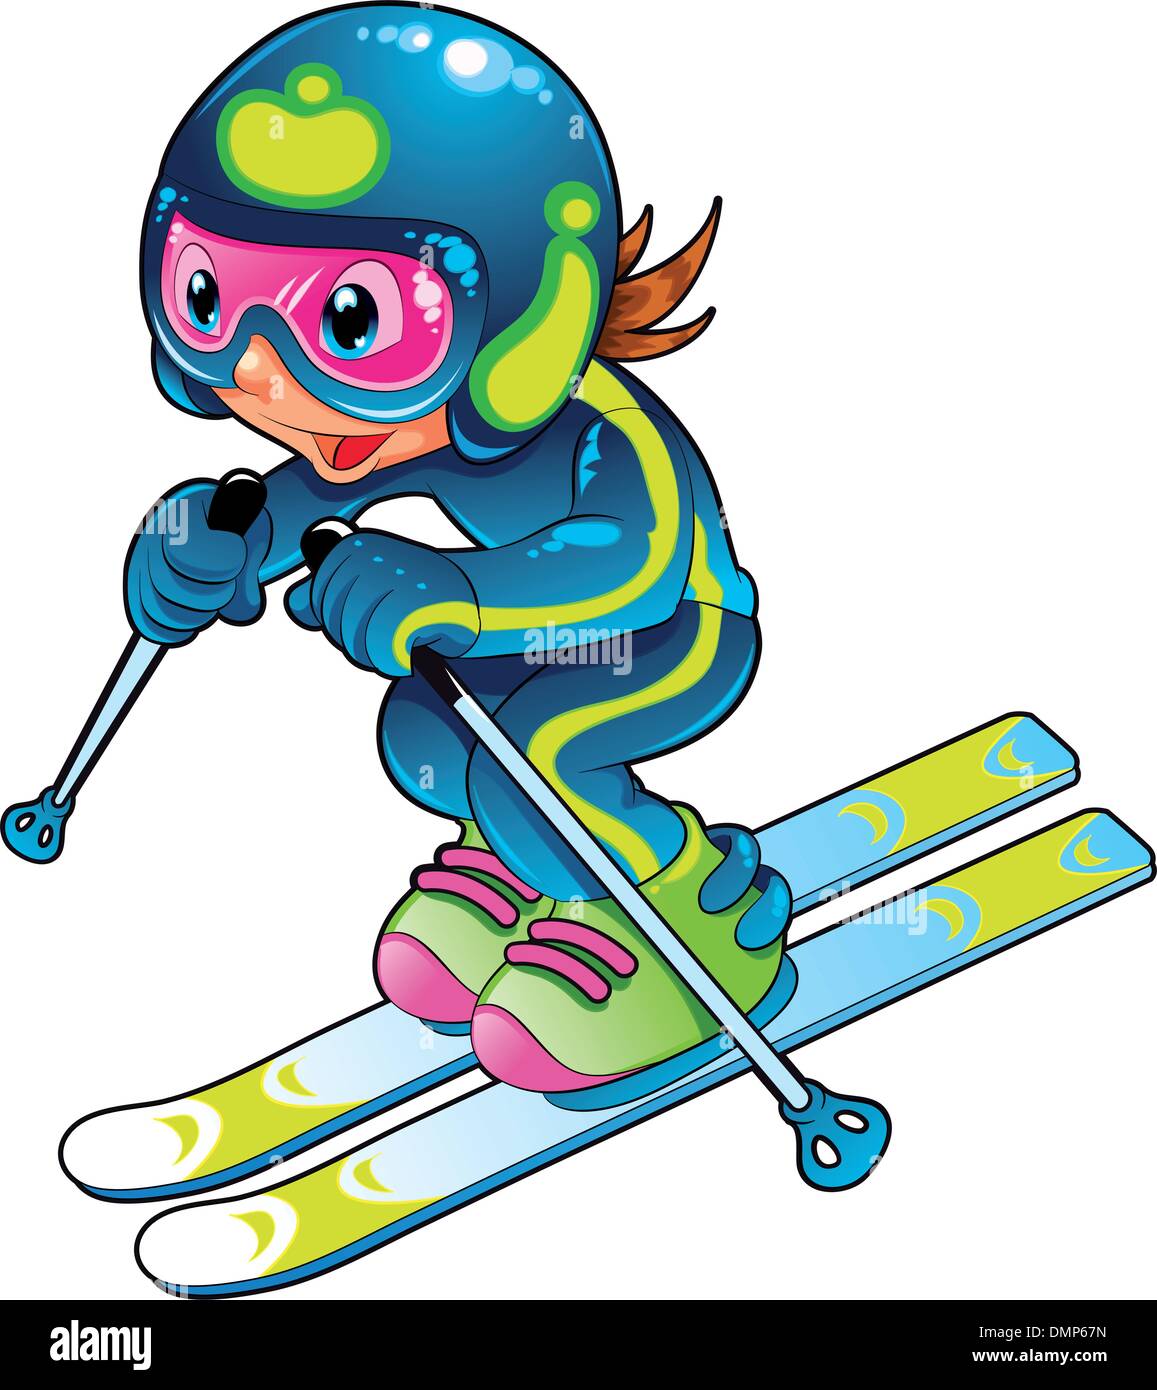 sciatore-bambino-dmp67n.jpg